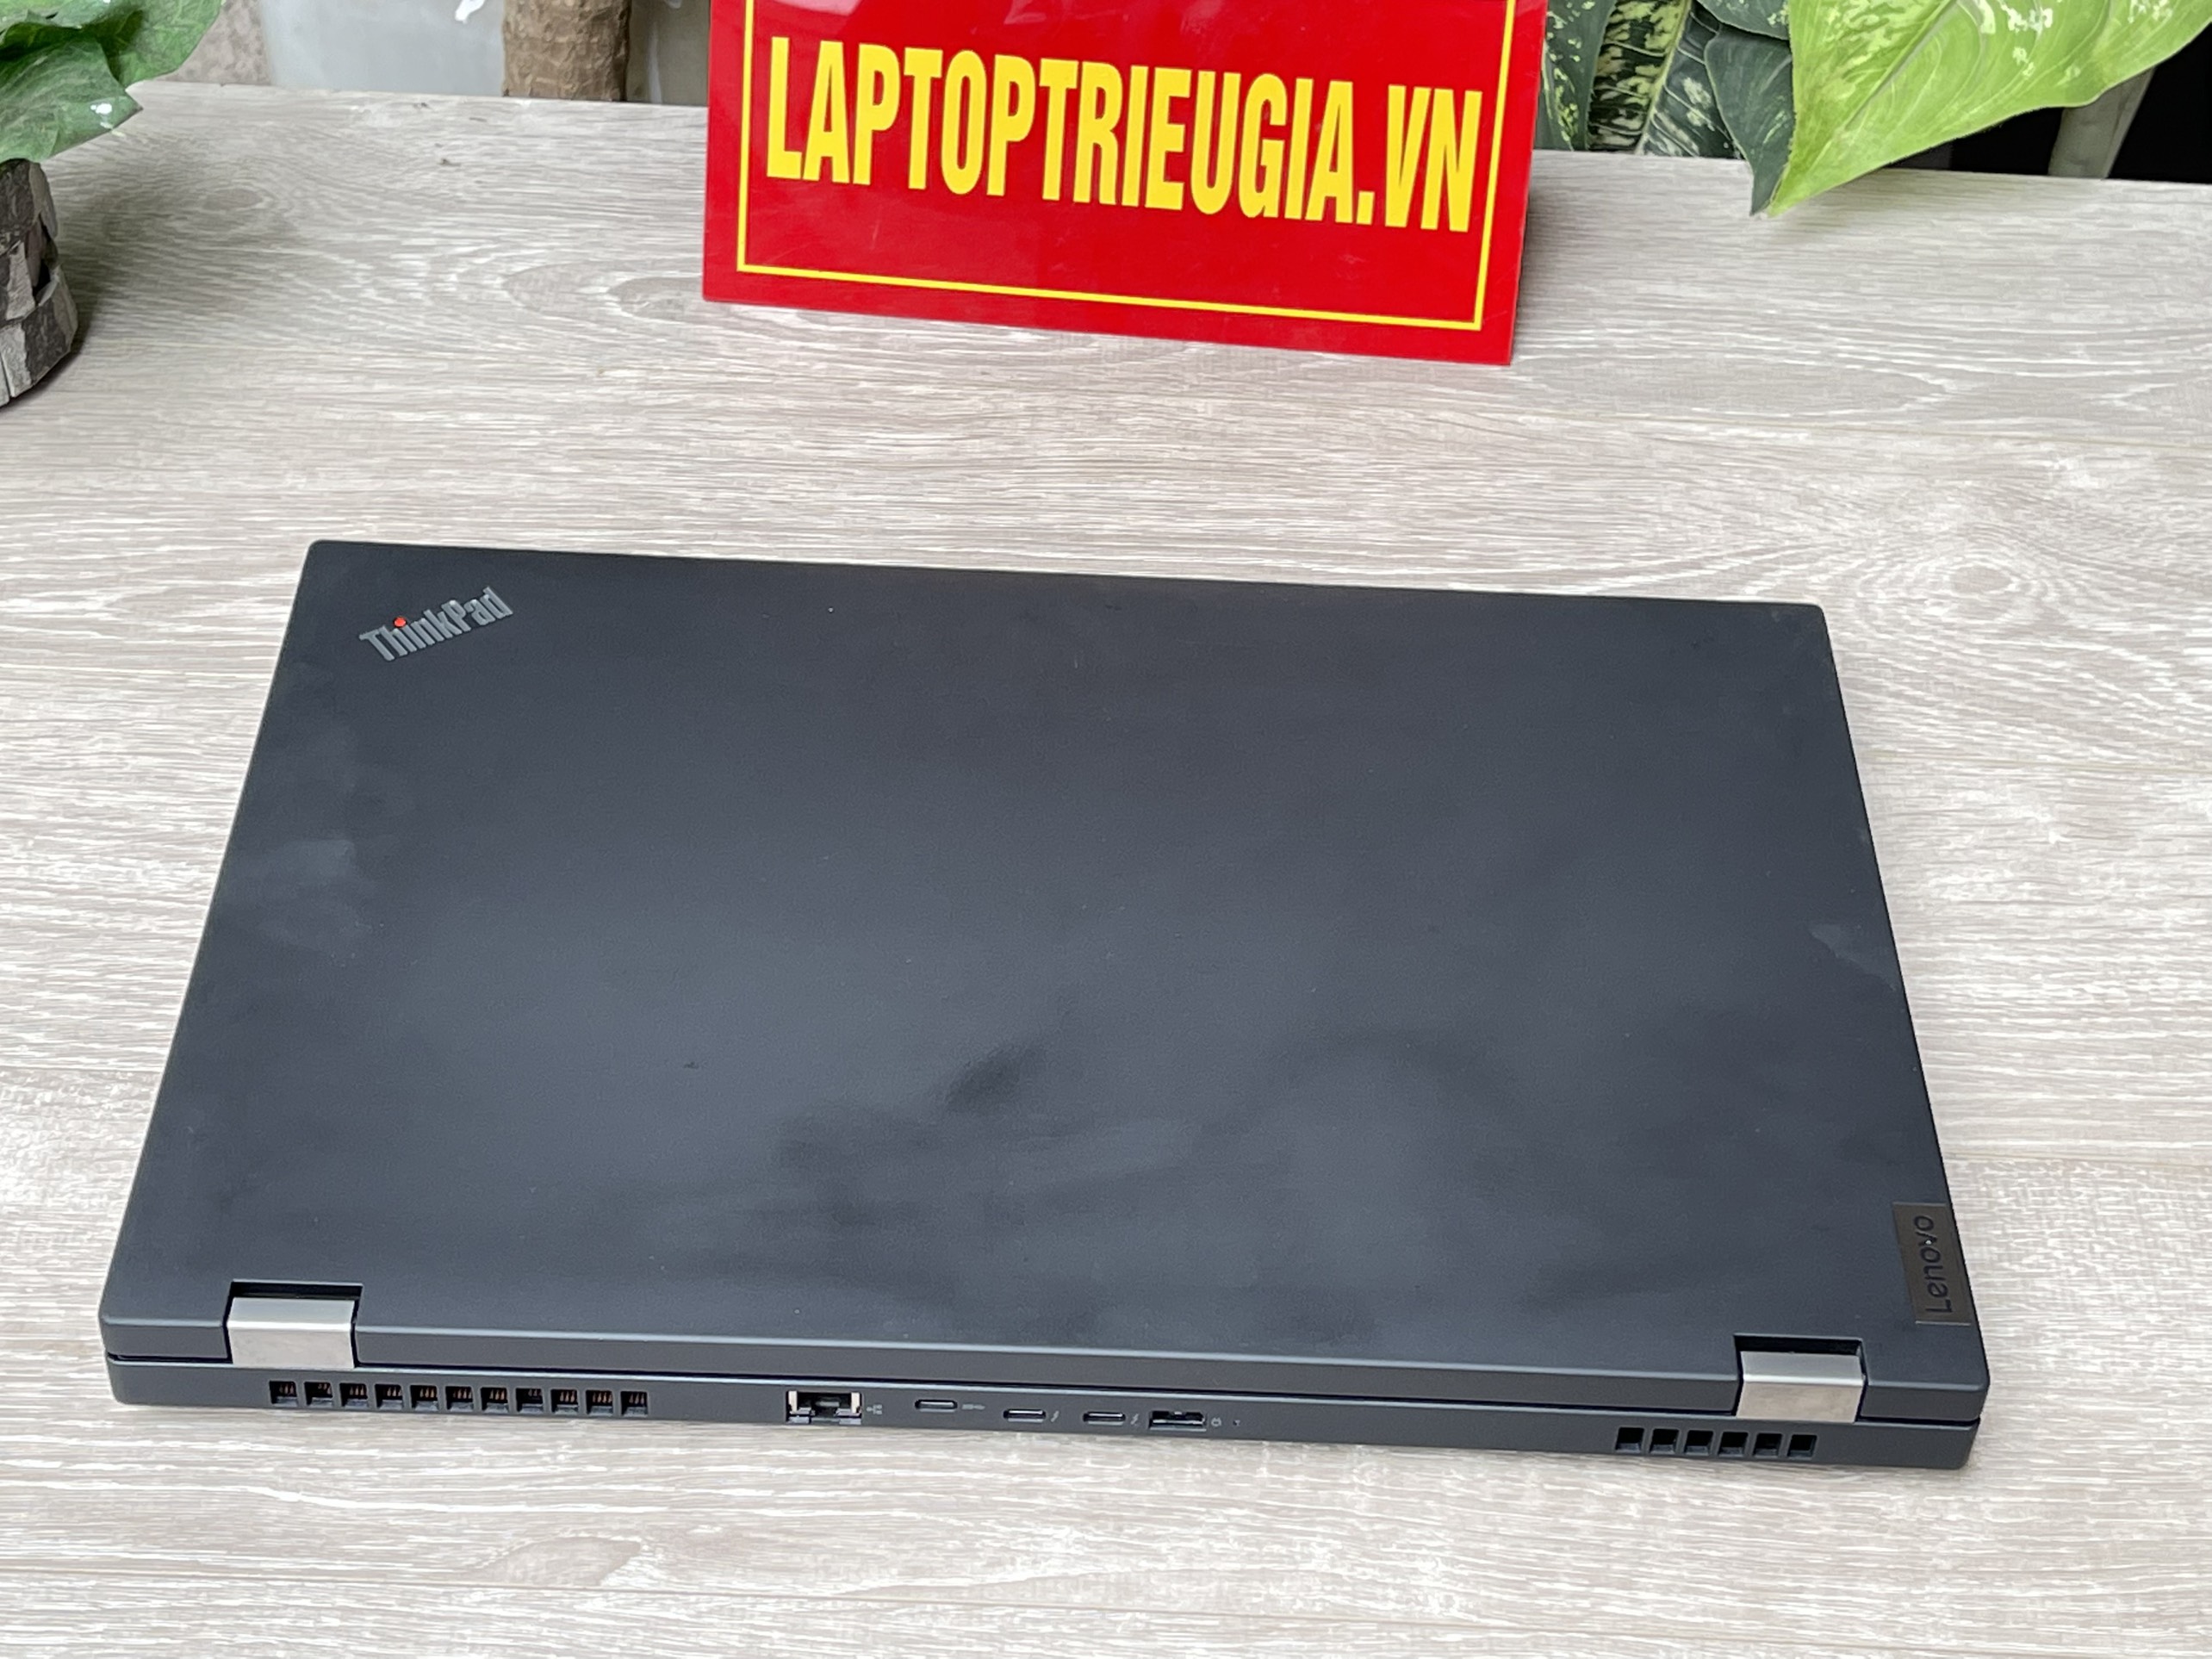 Lenovo ThinkPad P17: i5-10400H| RAM 8GB| SSD 512GB| Quadro T1000 | 17.3 FHD